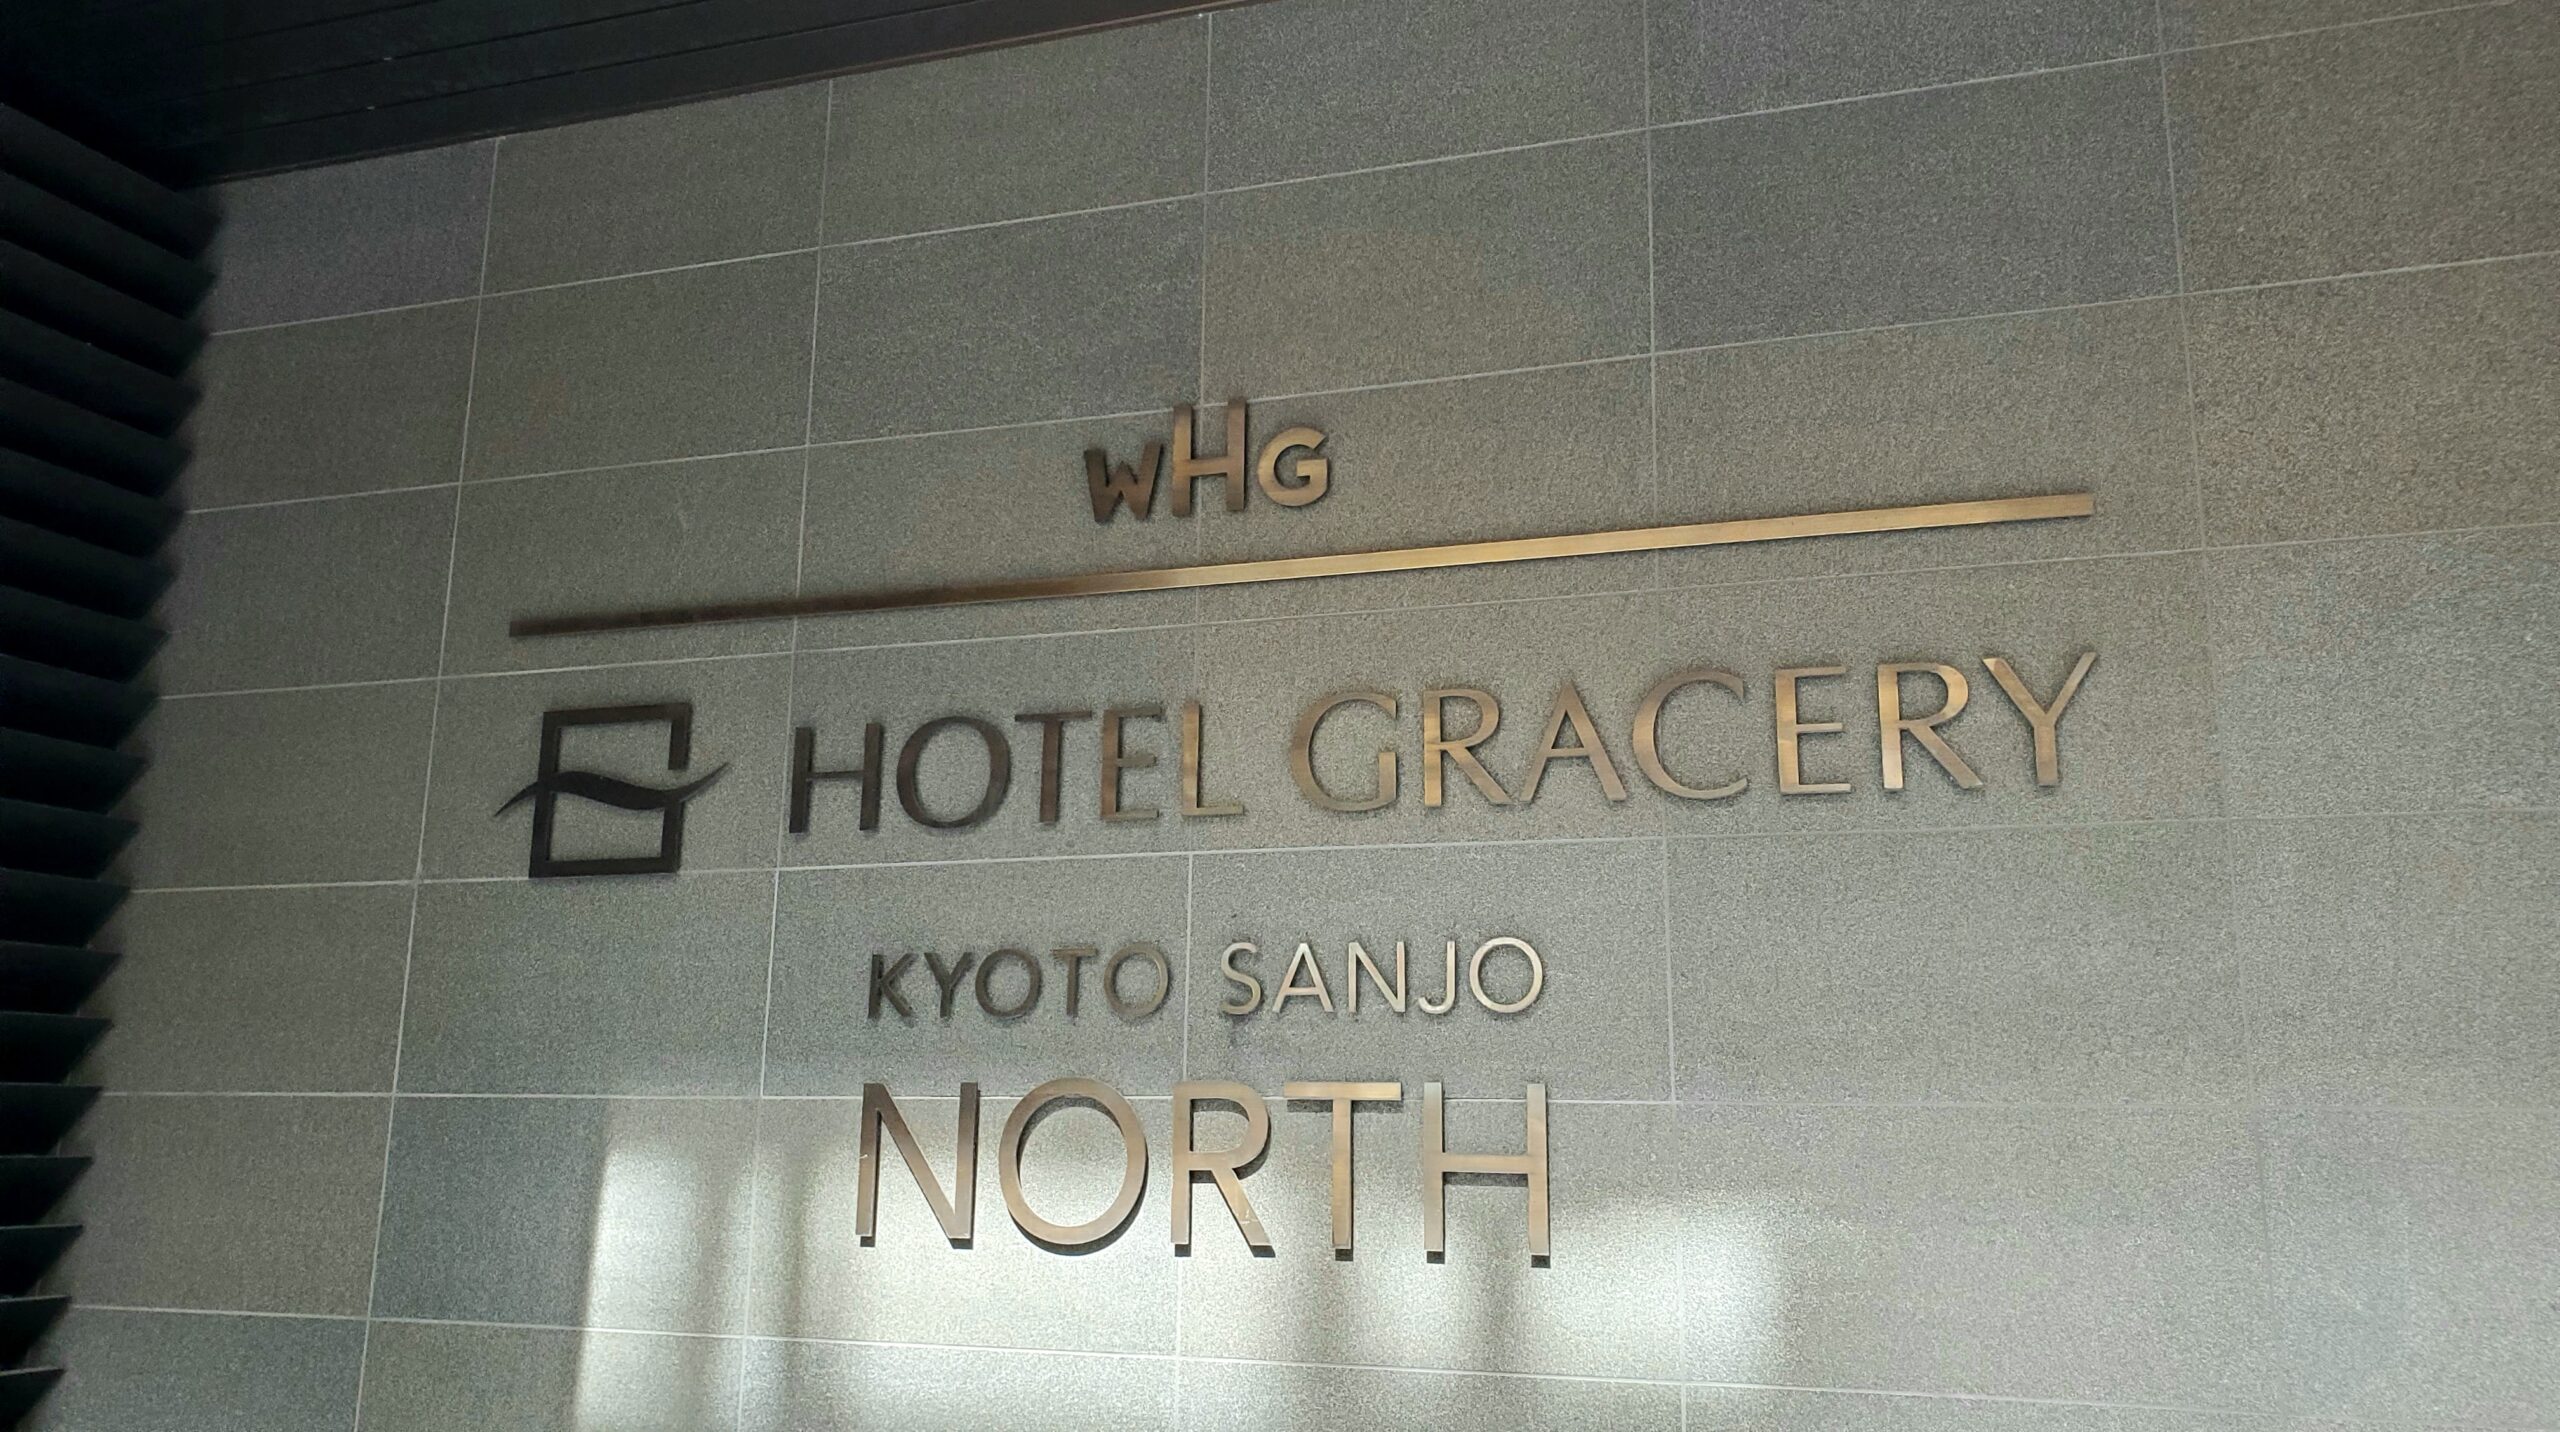 ホテルグレイスリー京都三条